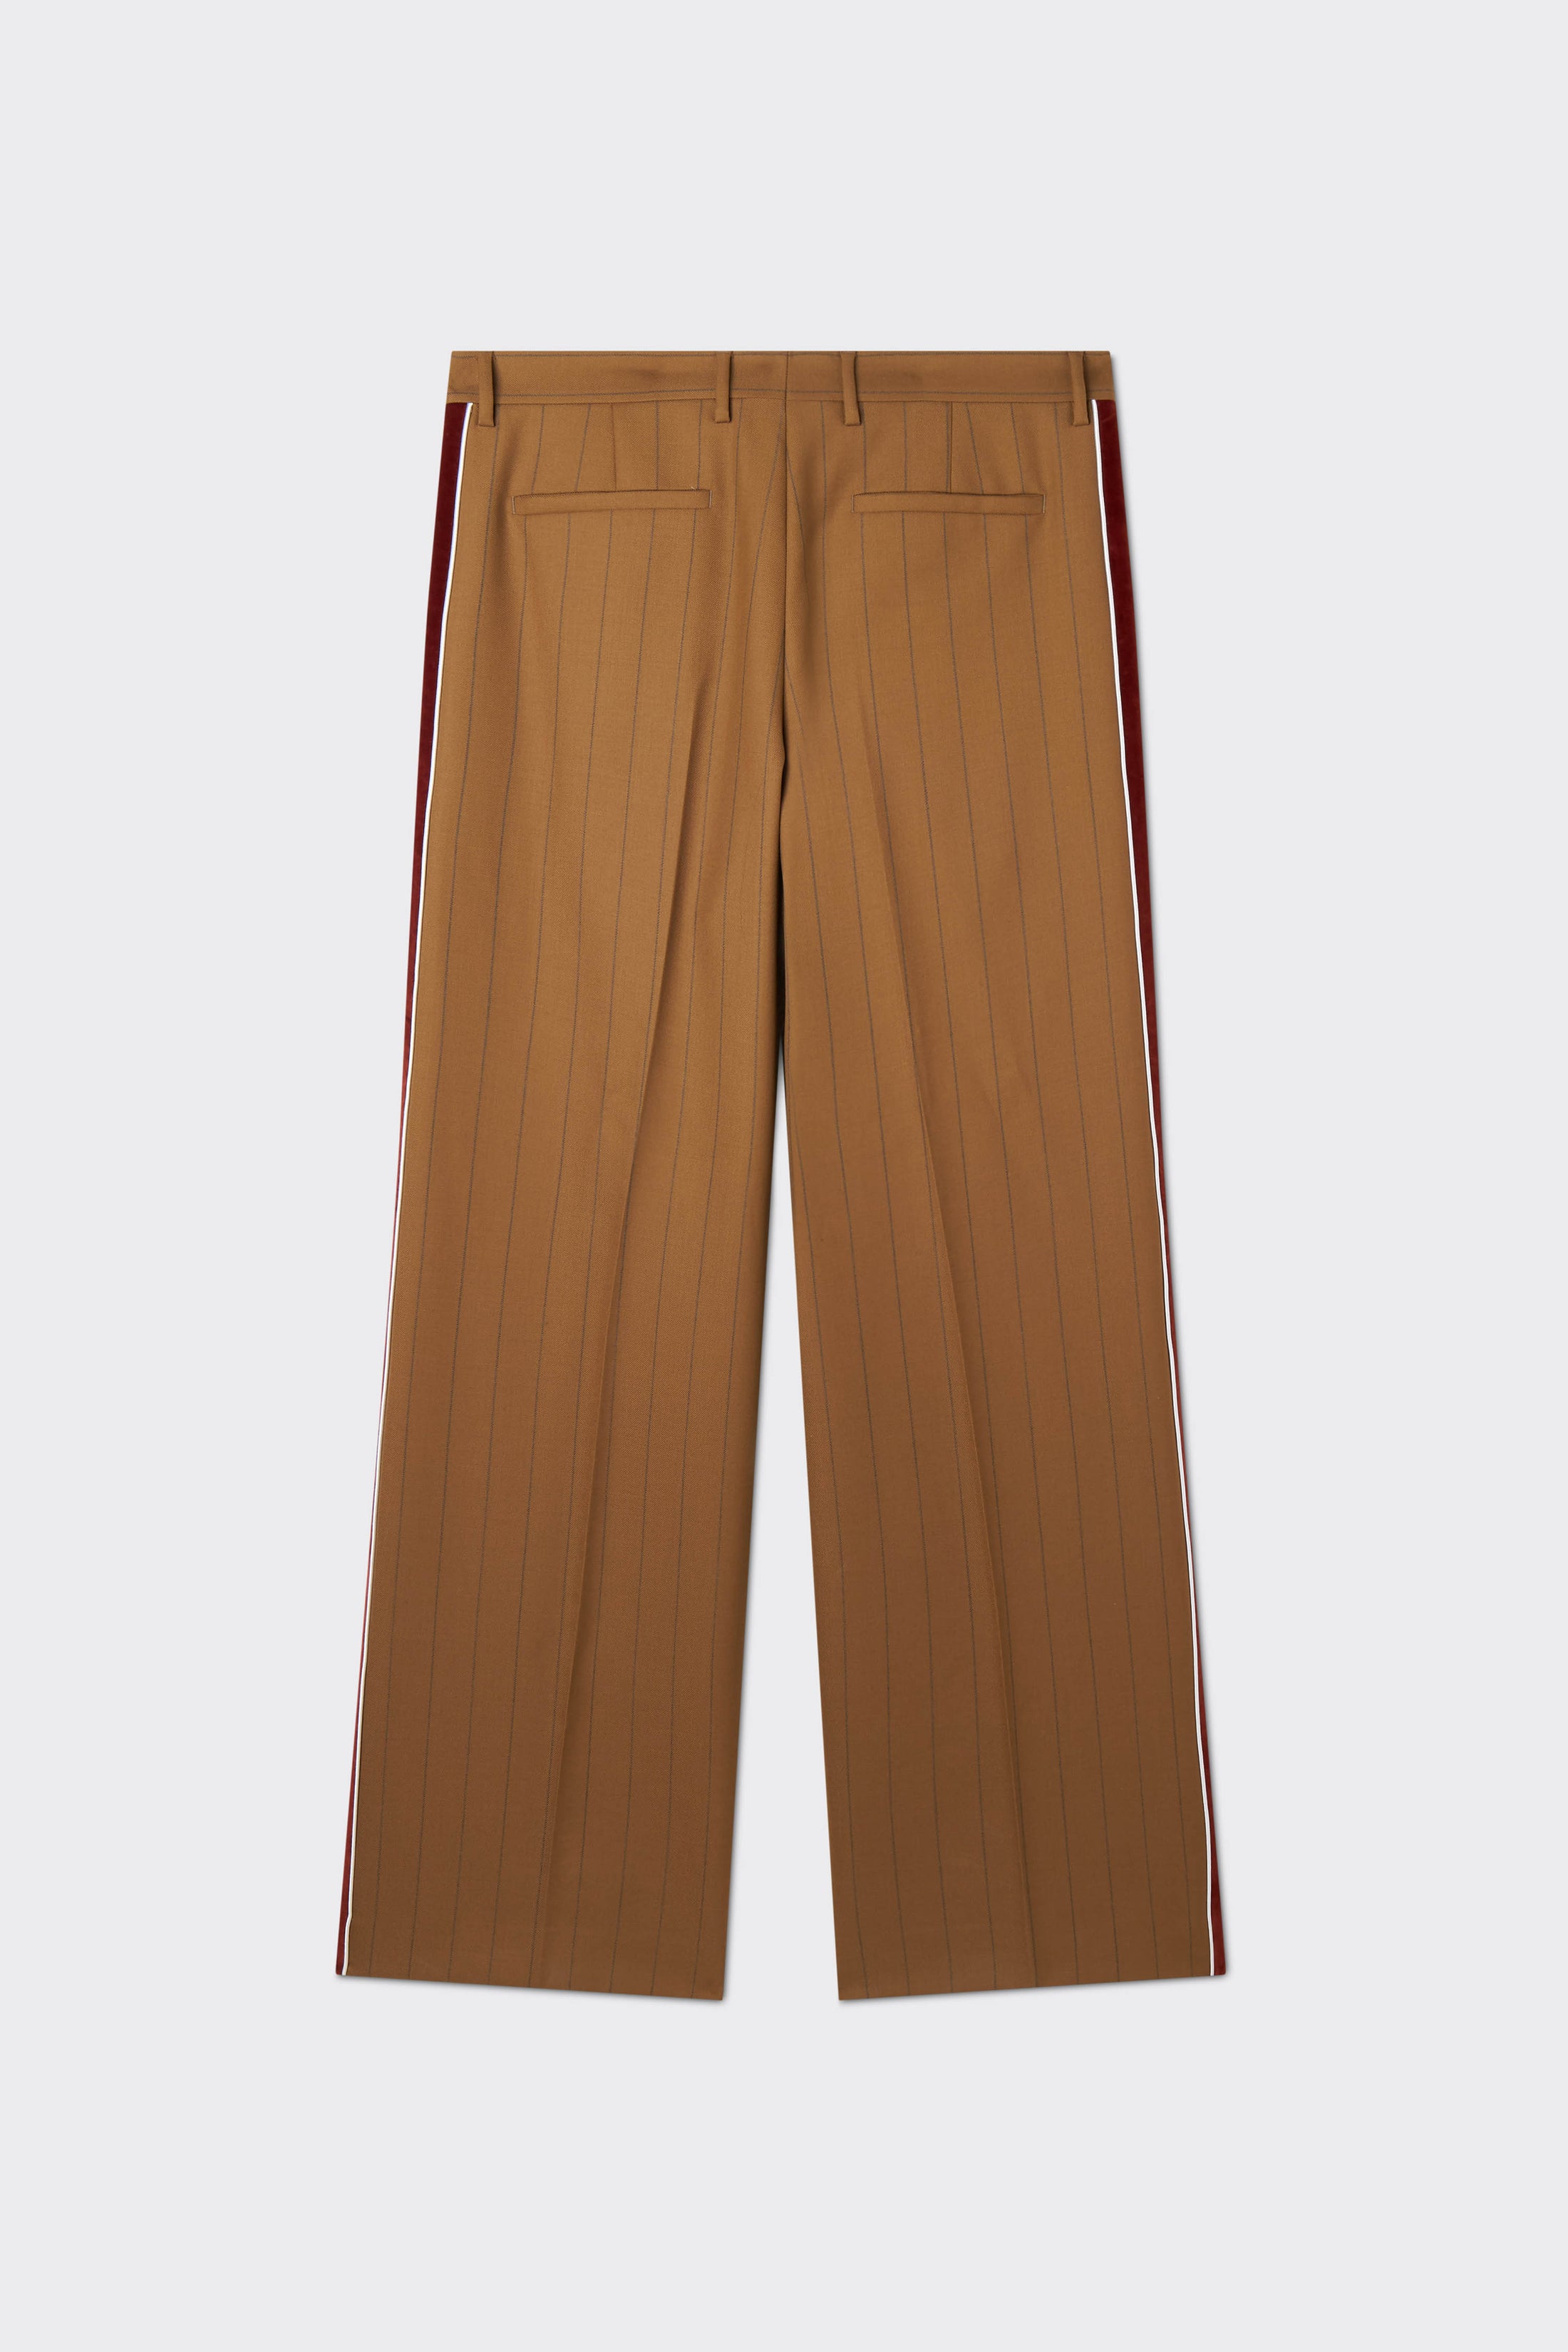 Wales Bonner Suit Pants